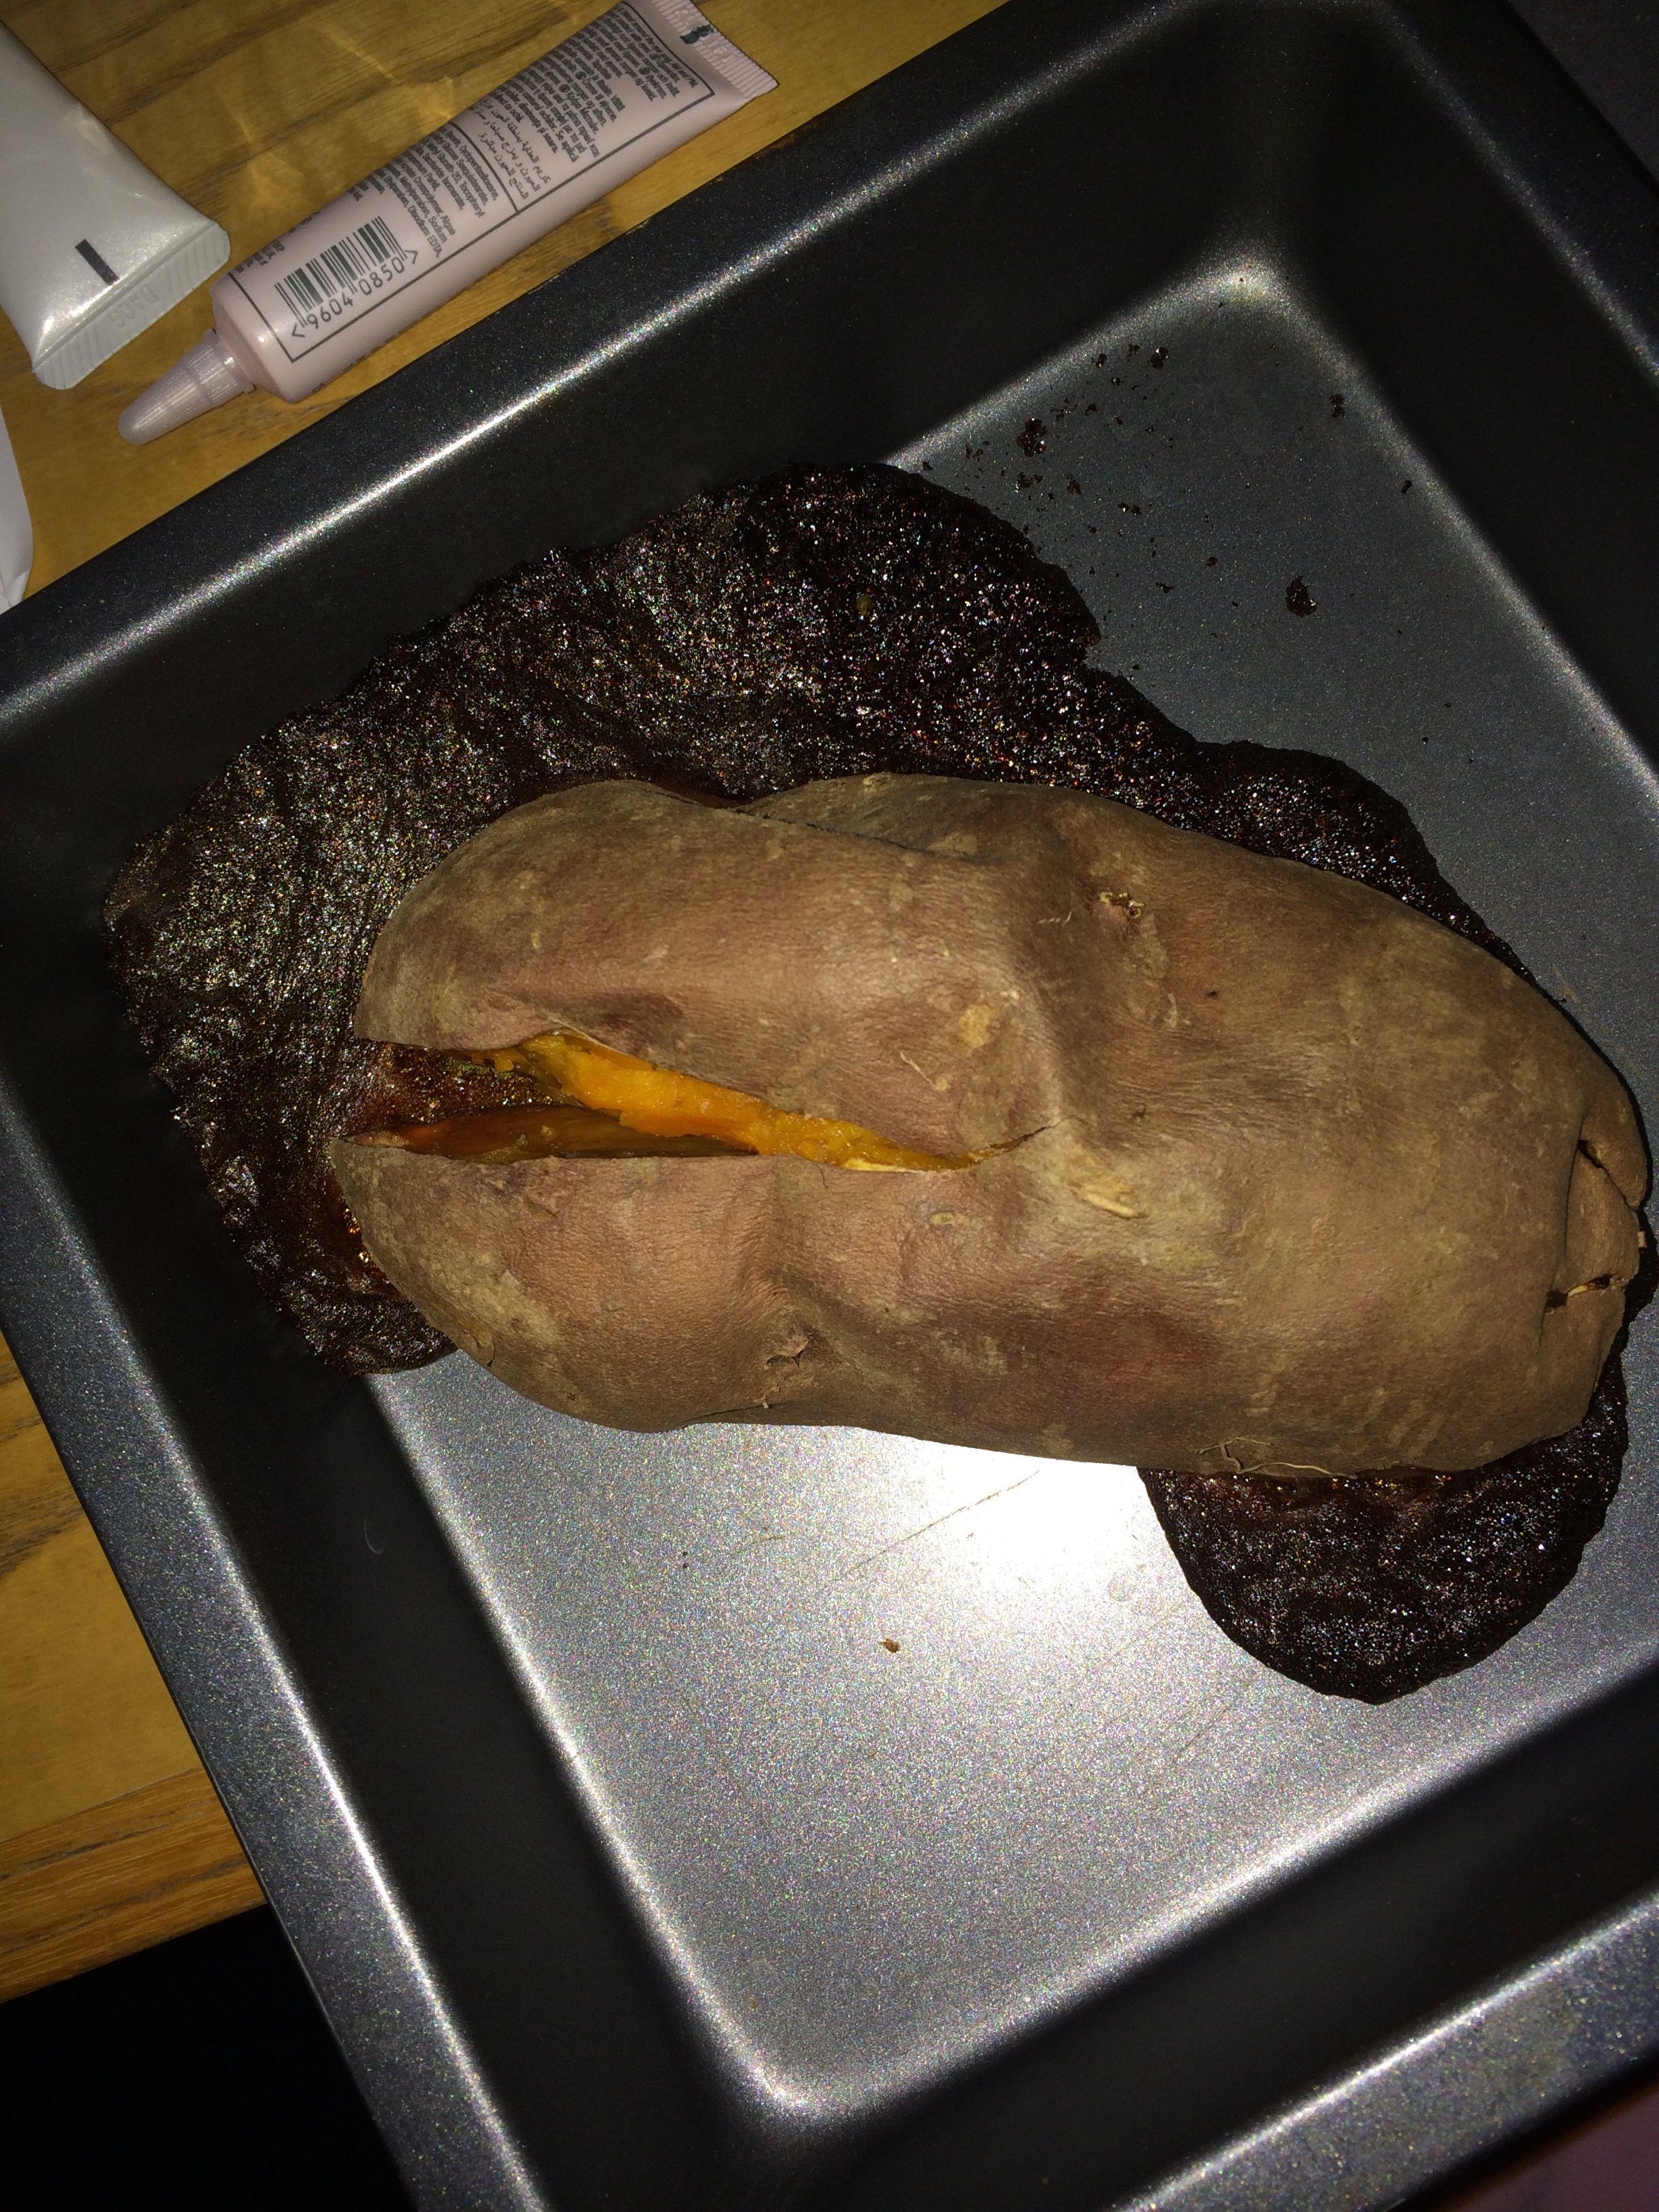 用烤箱烤红薯50分钟后红薯周围出现一圈黑色的像屎一样的东西是什么?